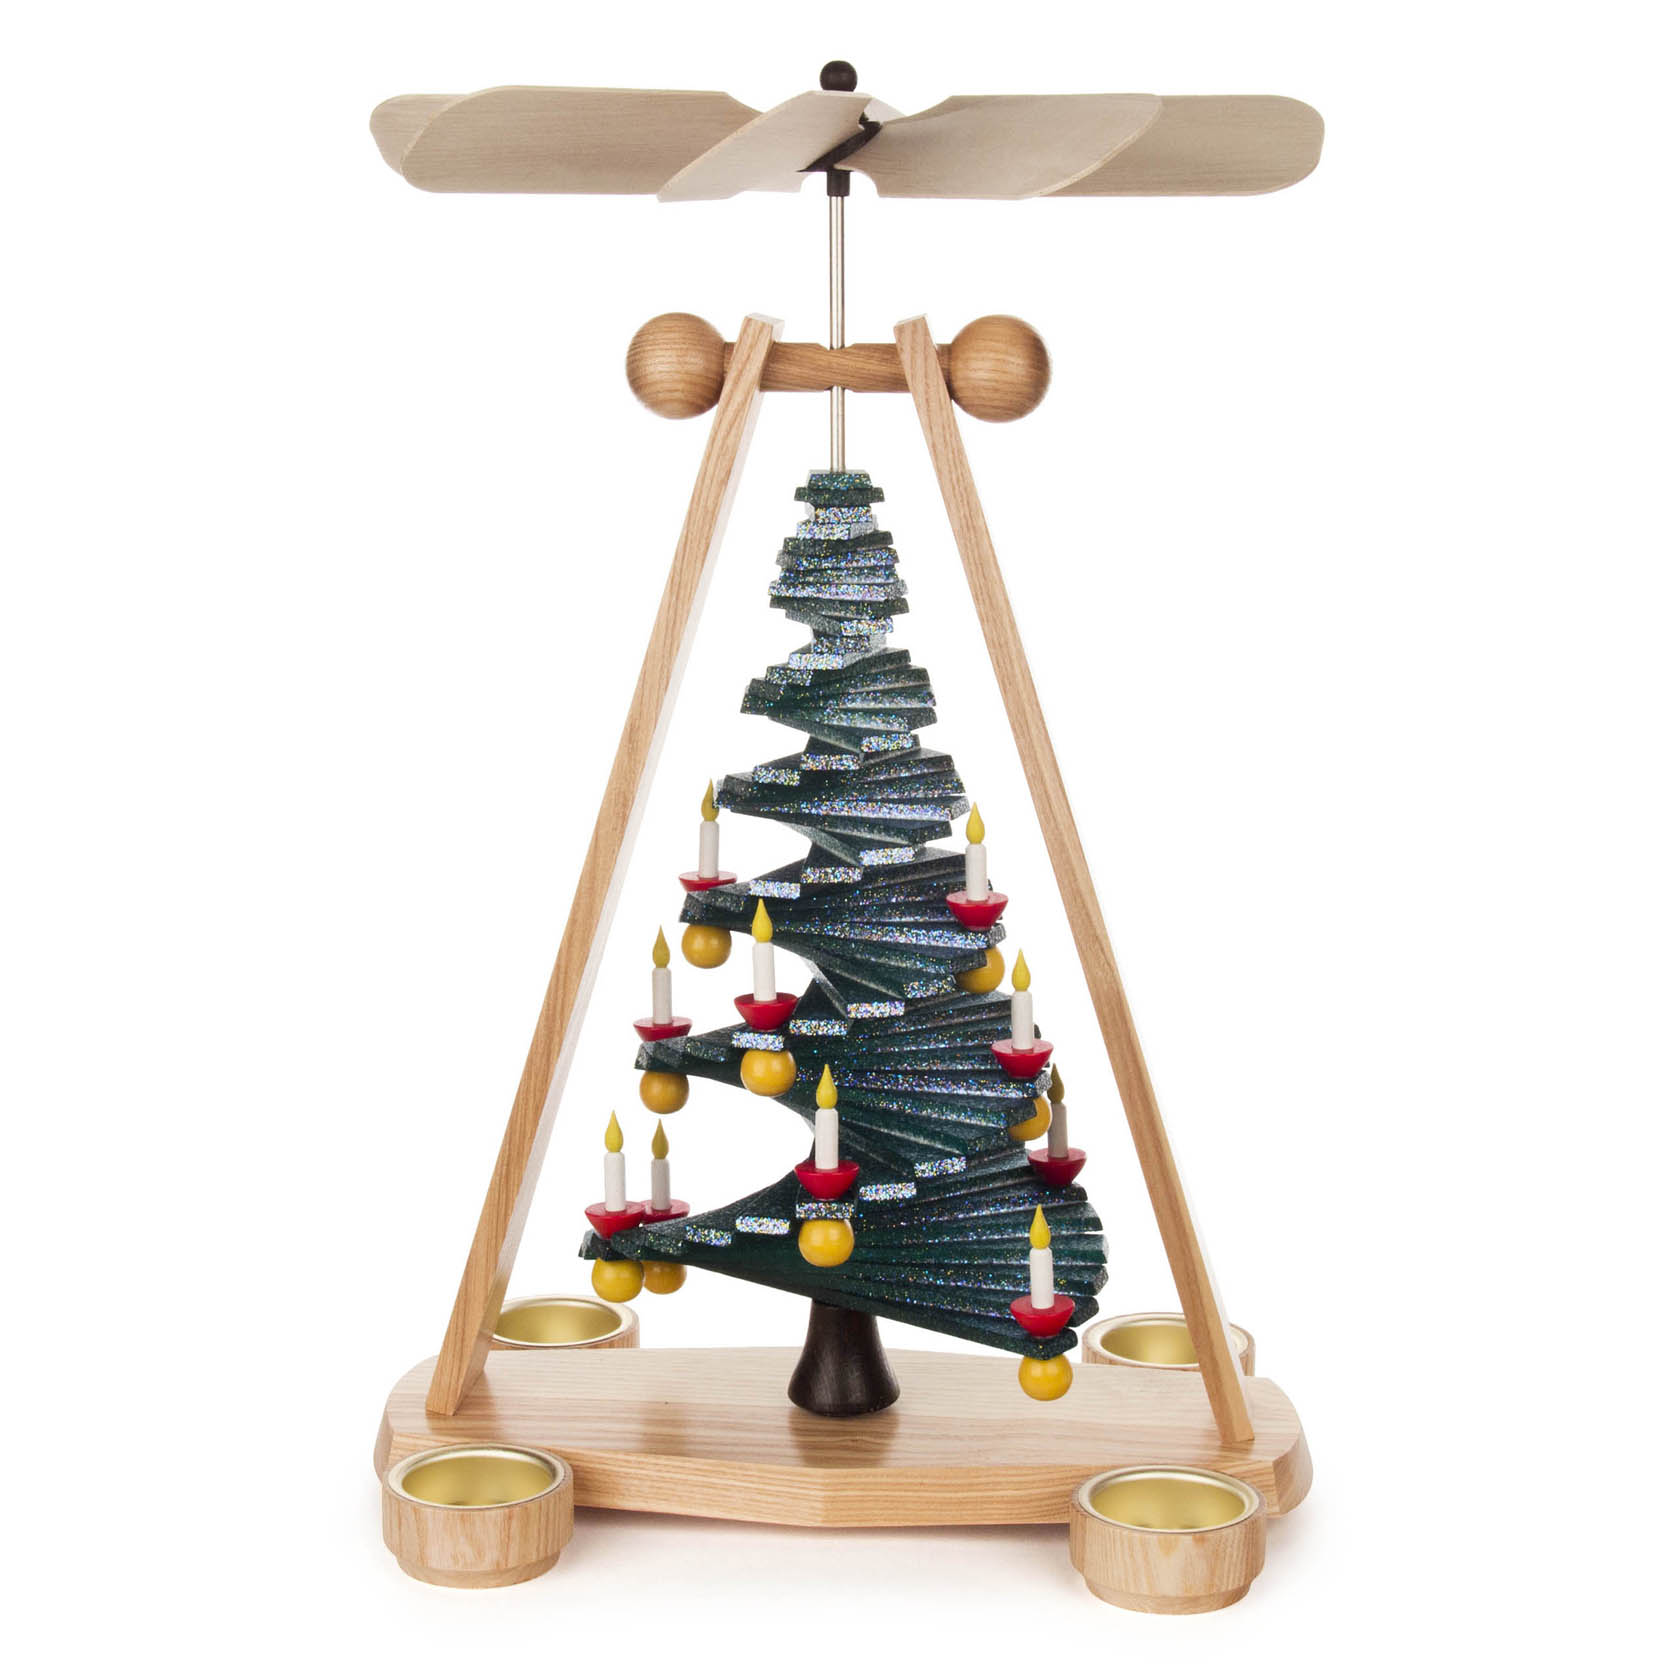 Pyramide Stufenbaum mit Goldeffekt für Teelichte -dregeno exklusiv- im Dregeno Online Shop günstig kaufen